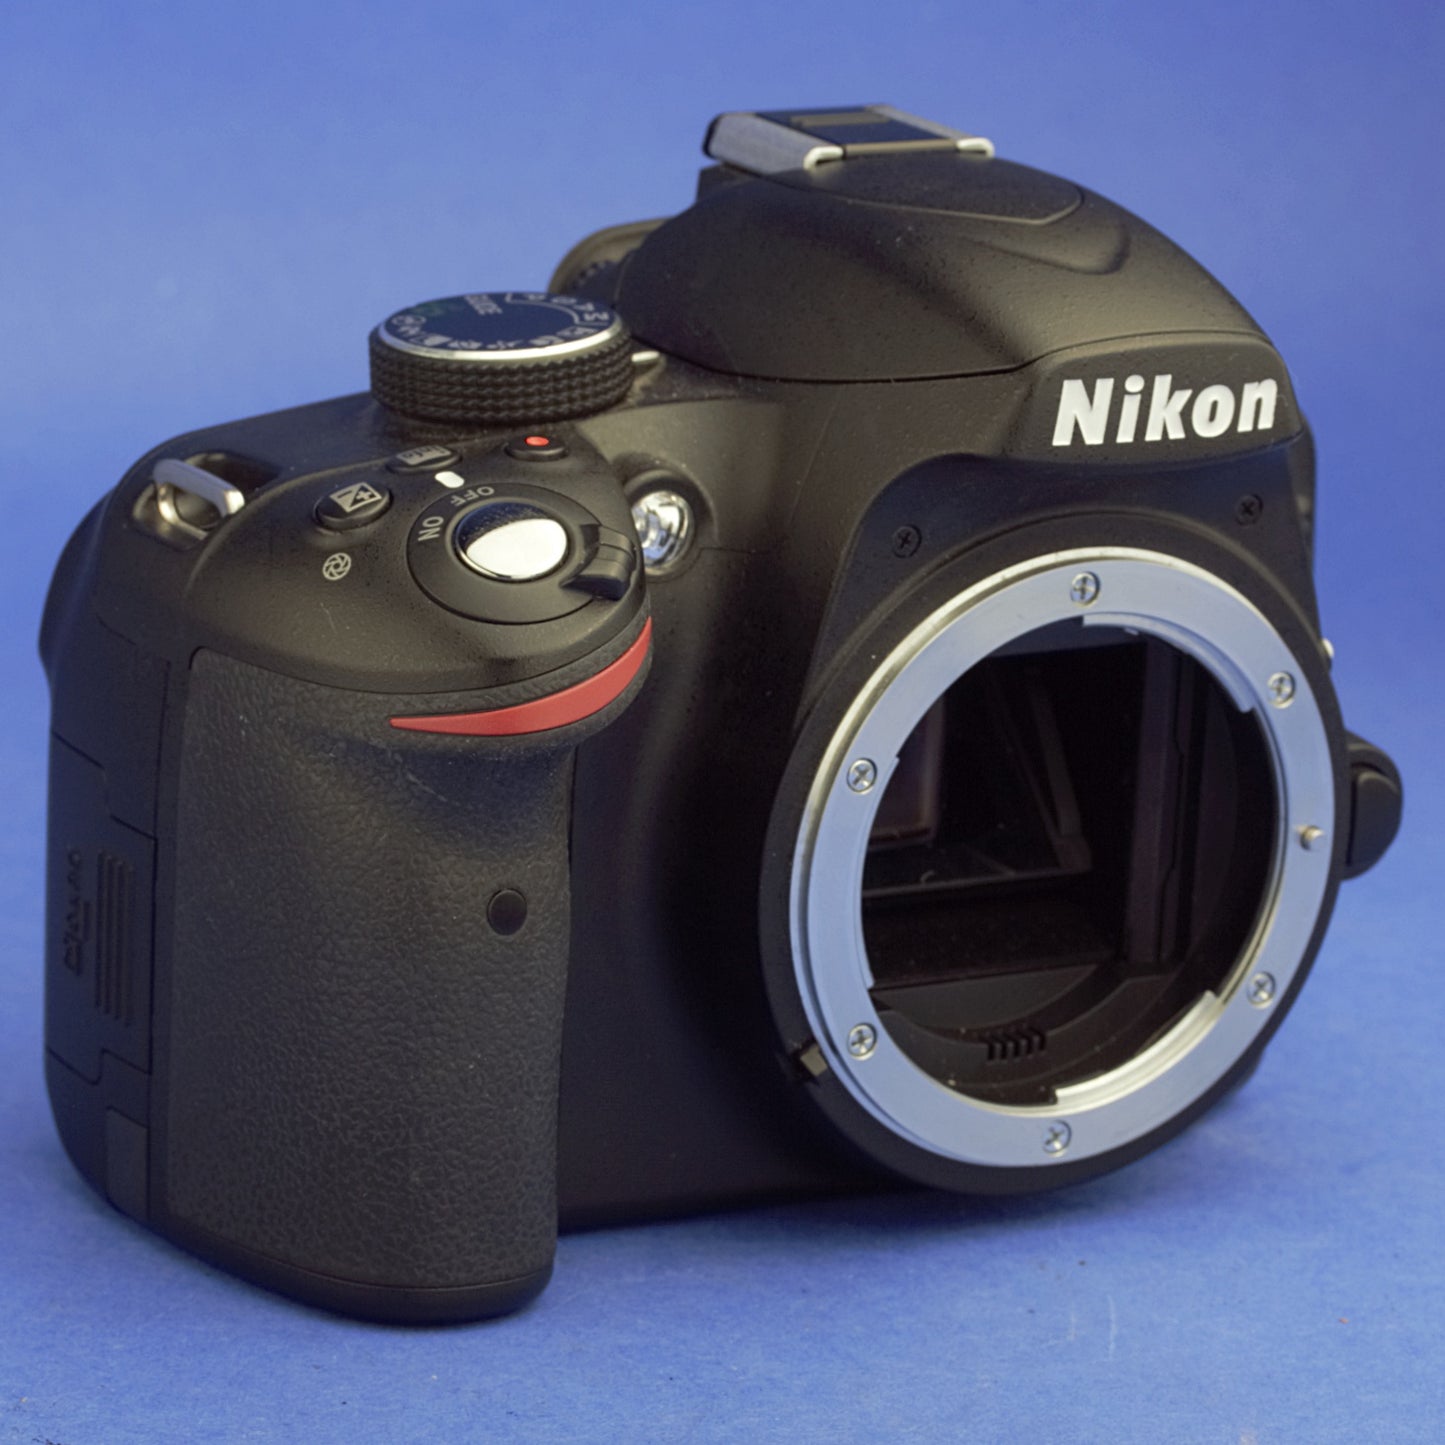 Nikon D3200 Digital Camera Body 8300 Actuations